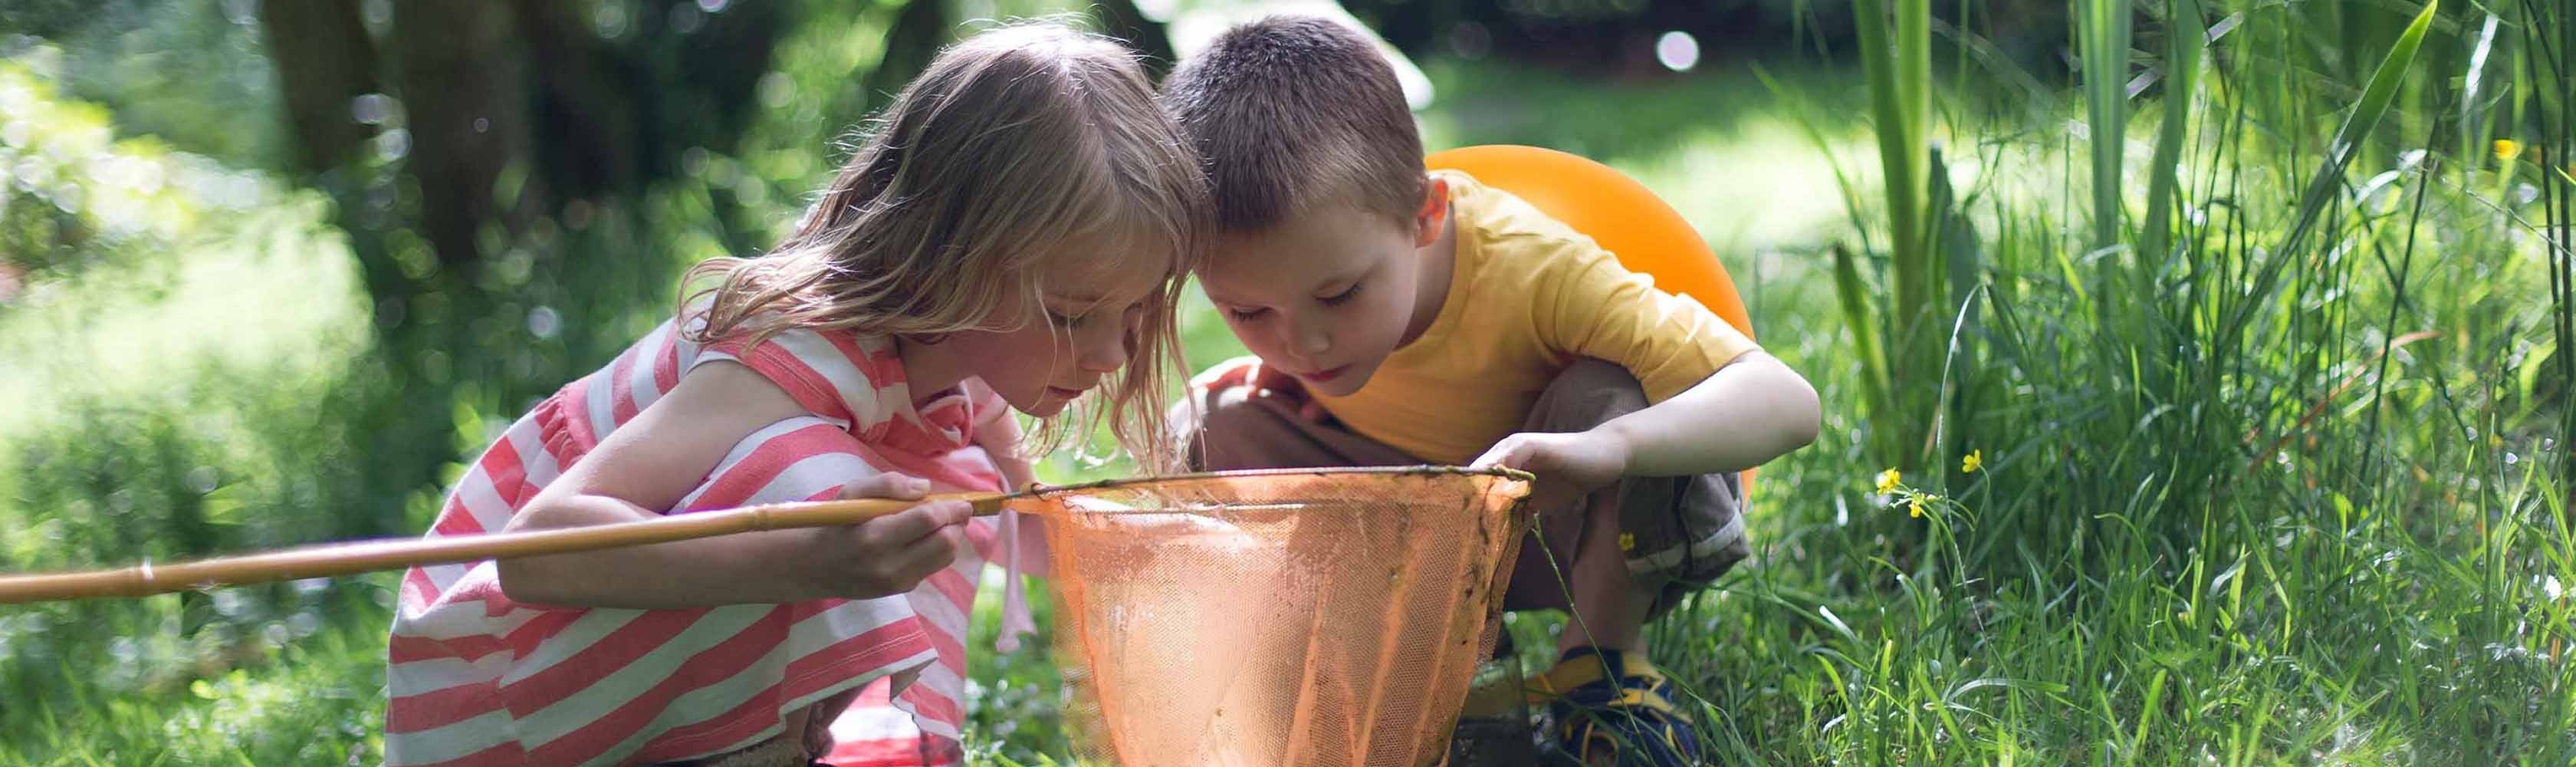 Due bambini osservano animali e piante nella rete di sicurezza